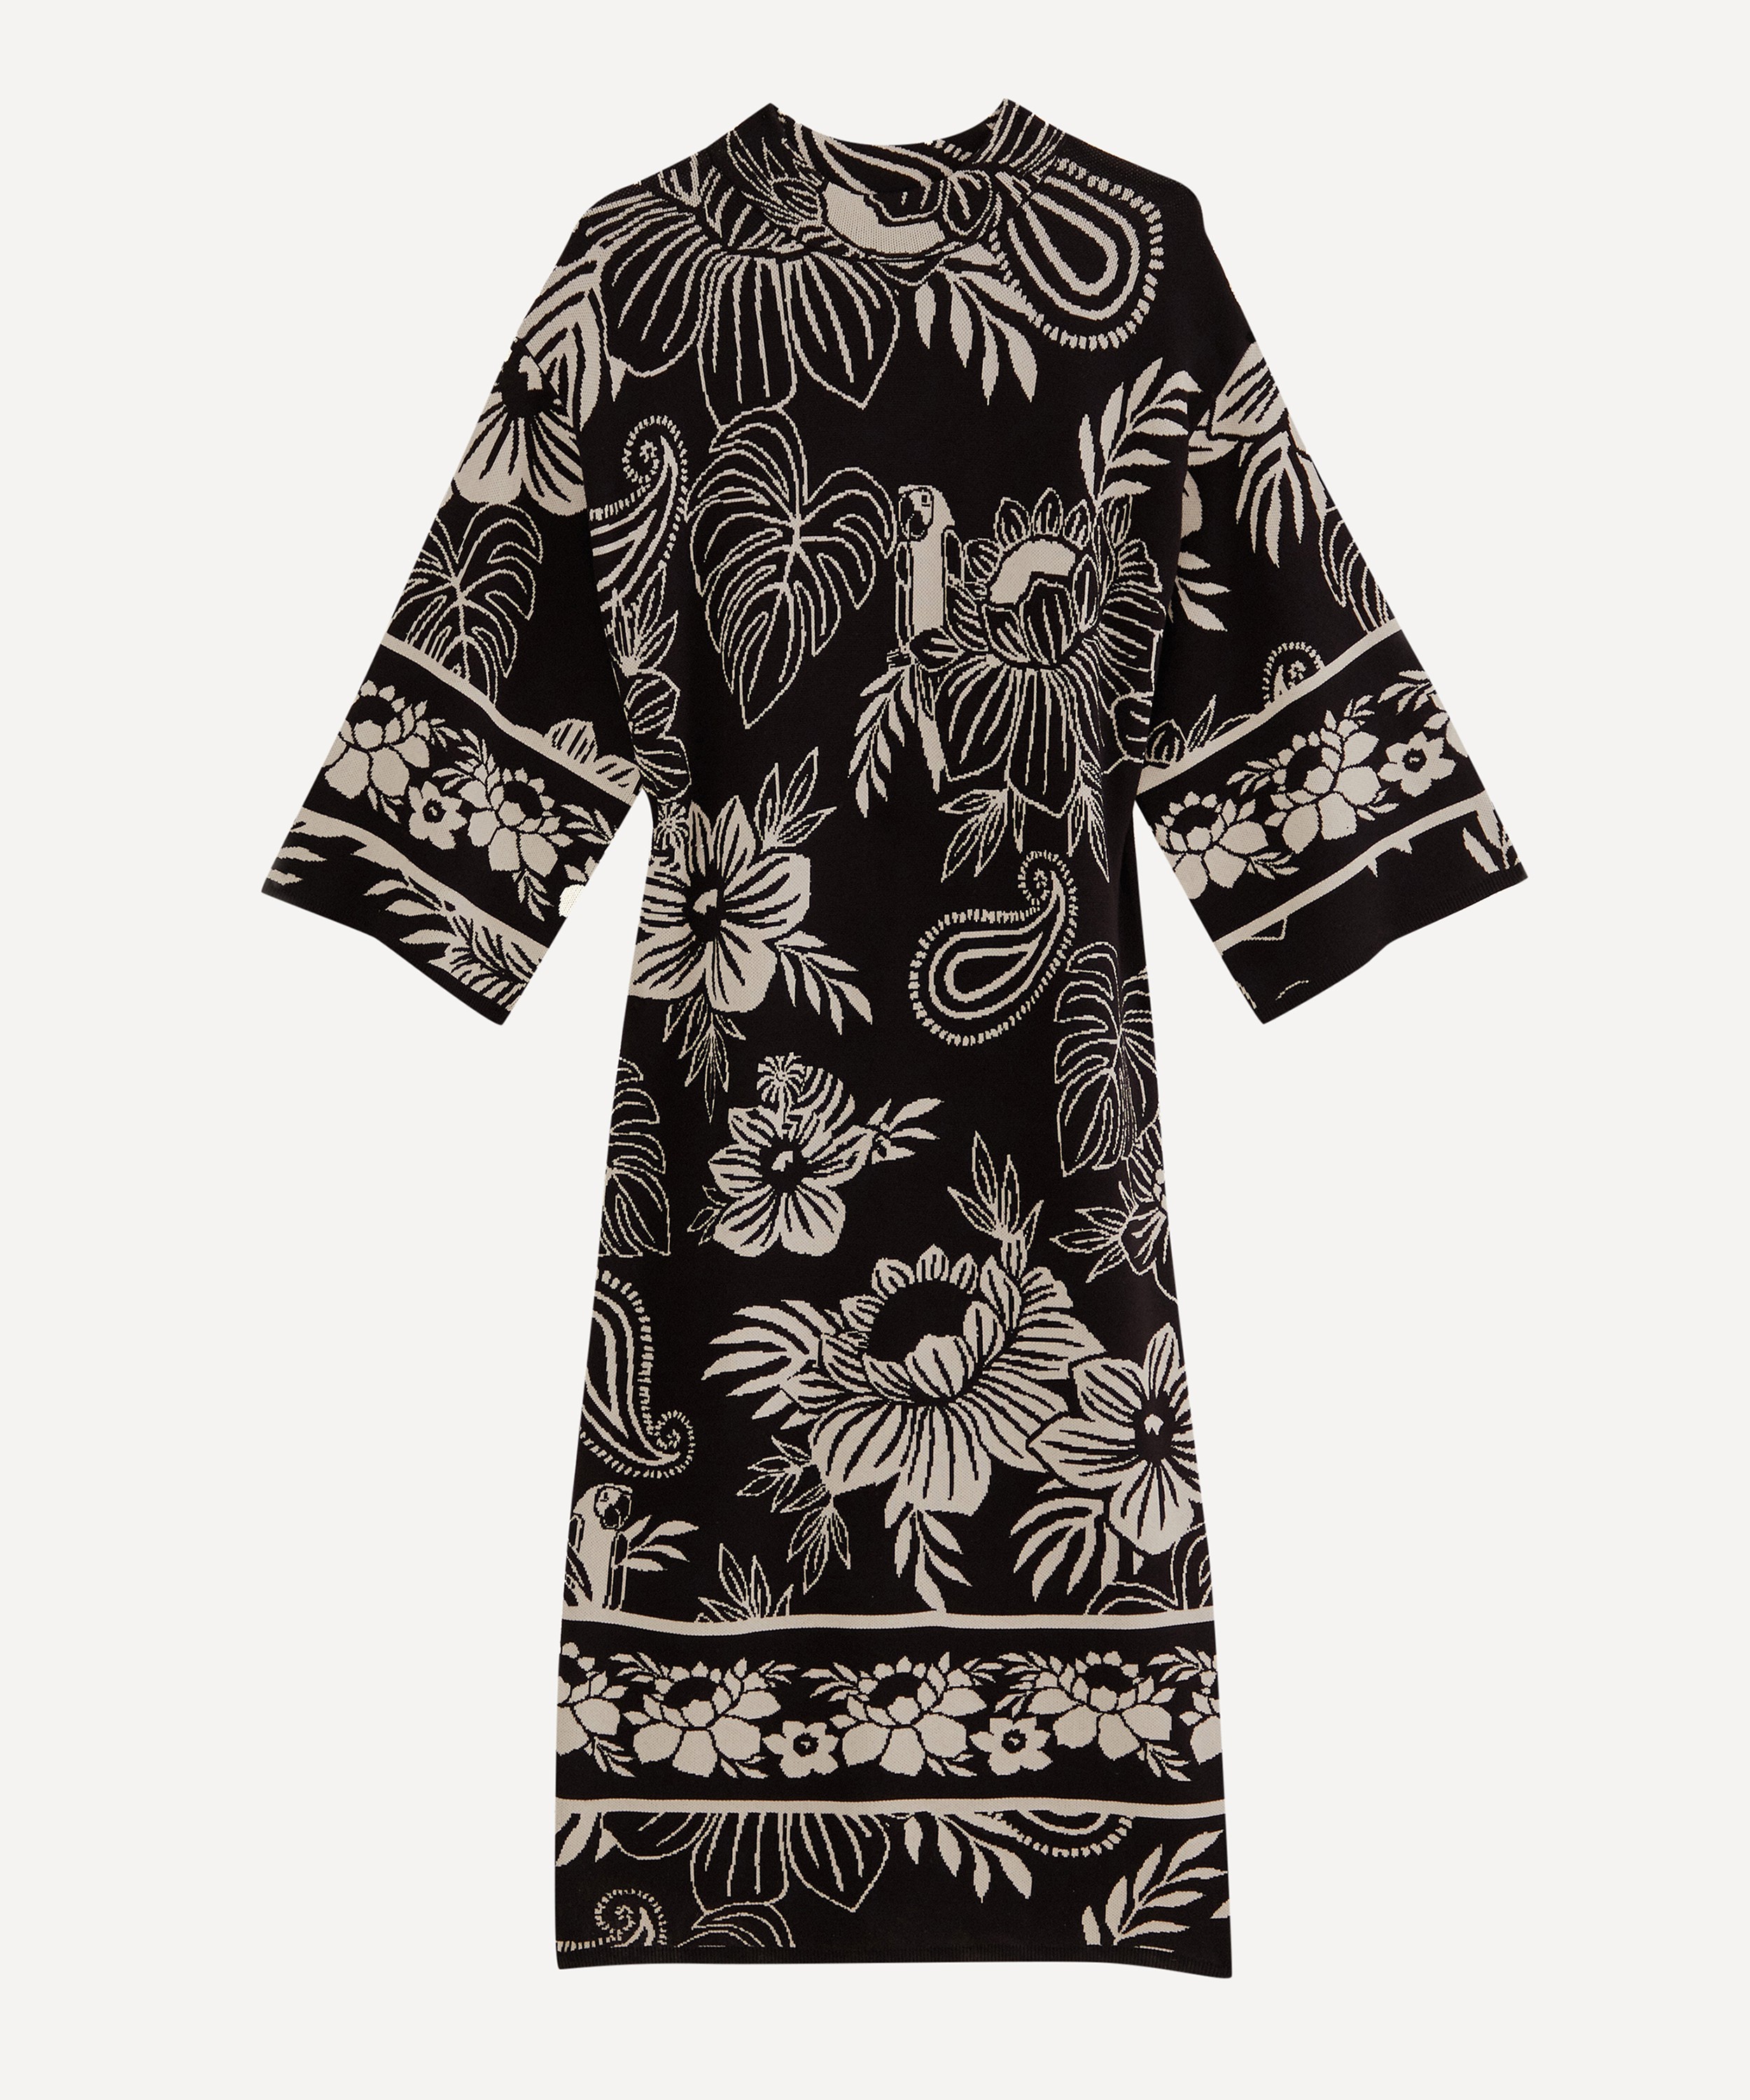 FARM Rio - Black Paisley Bloom Knit Dress